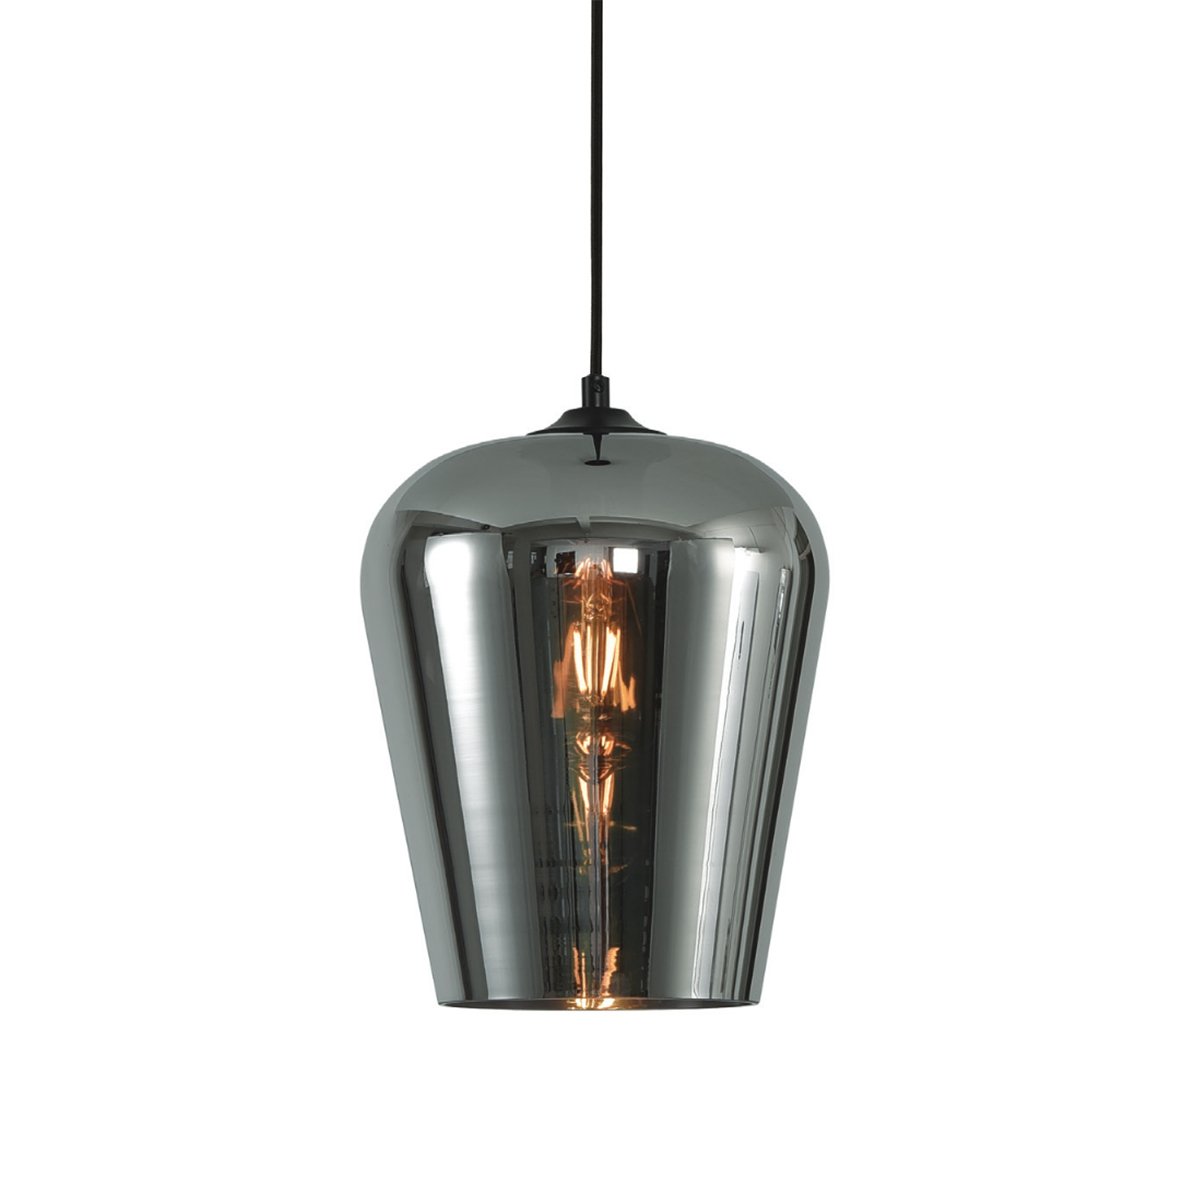 ga verder De waarheid vertellen neef Hanglamp modern metaal glas Alghero - Ø 23 cm | Manves.nl